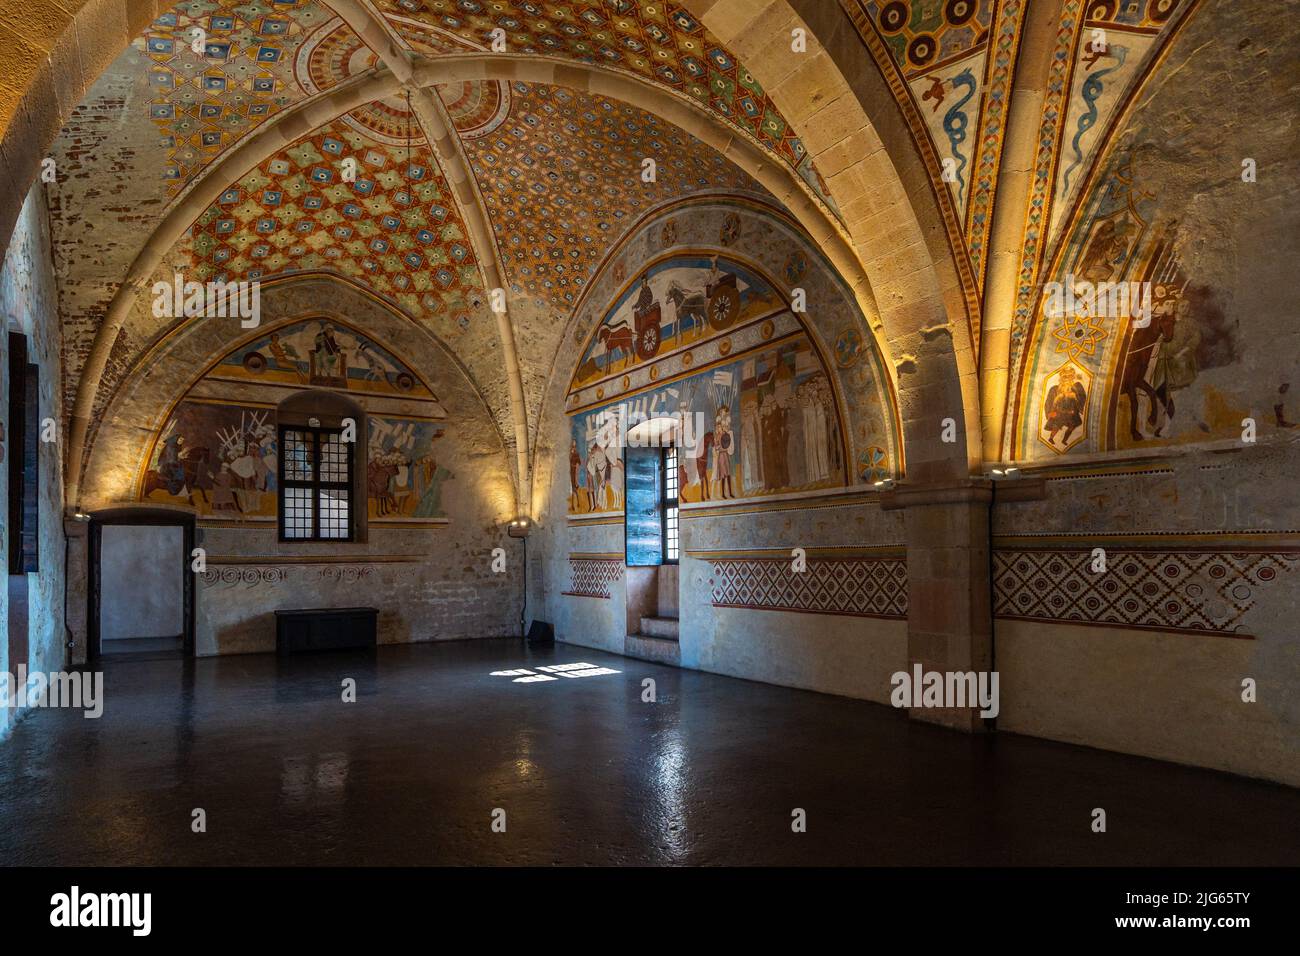 Sala della Giustizia (salle de justice) à Rocca di Angera, avec d'anciennes fresques médiévales couvrant toute la salle. Angera, Lombardie, Italie, avril 2022 Banque D'Images